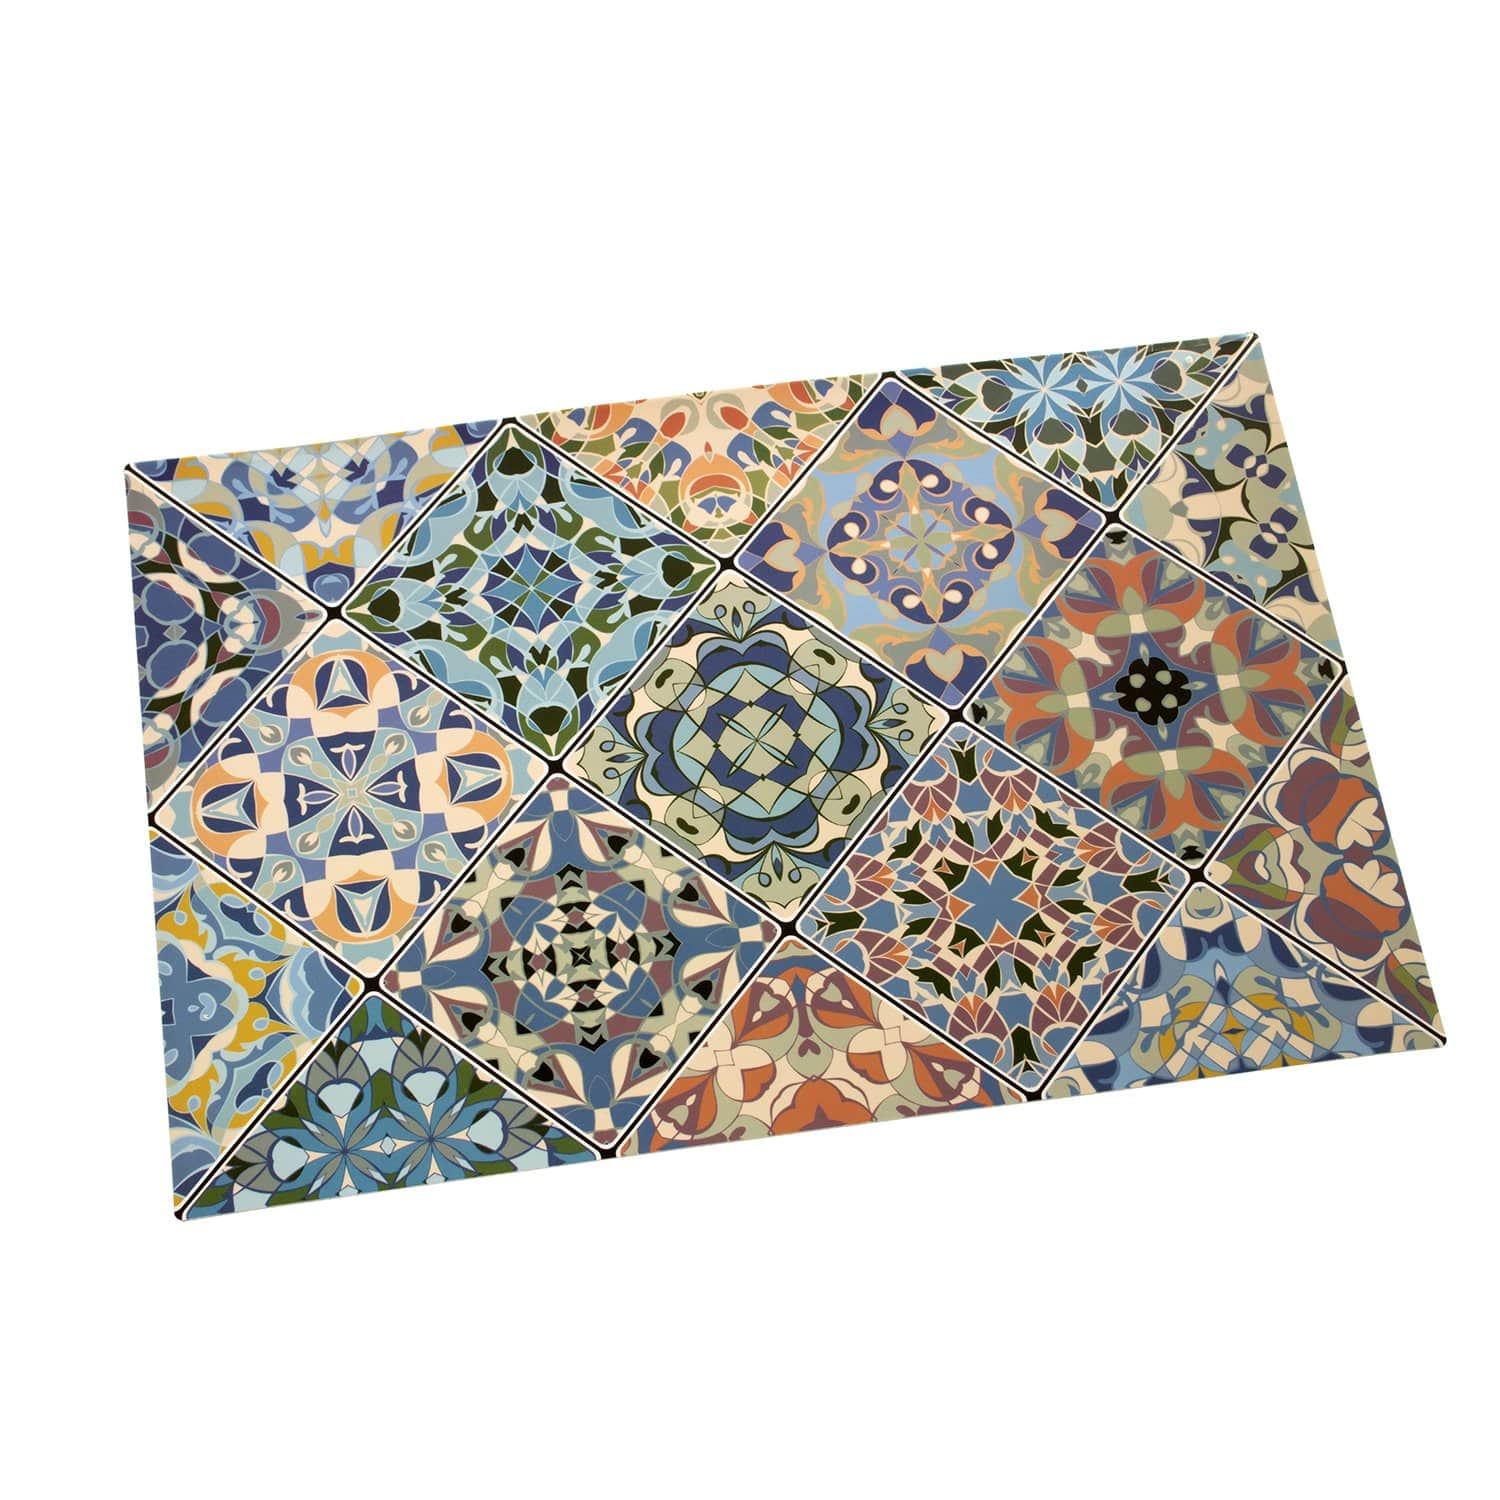 Tovaglietta prima colazione fantasia Grigio mosaico 45x30 cm - Dolci pensieri gift